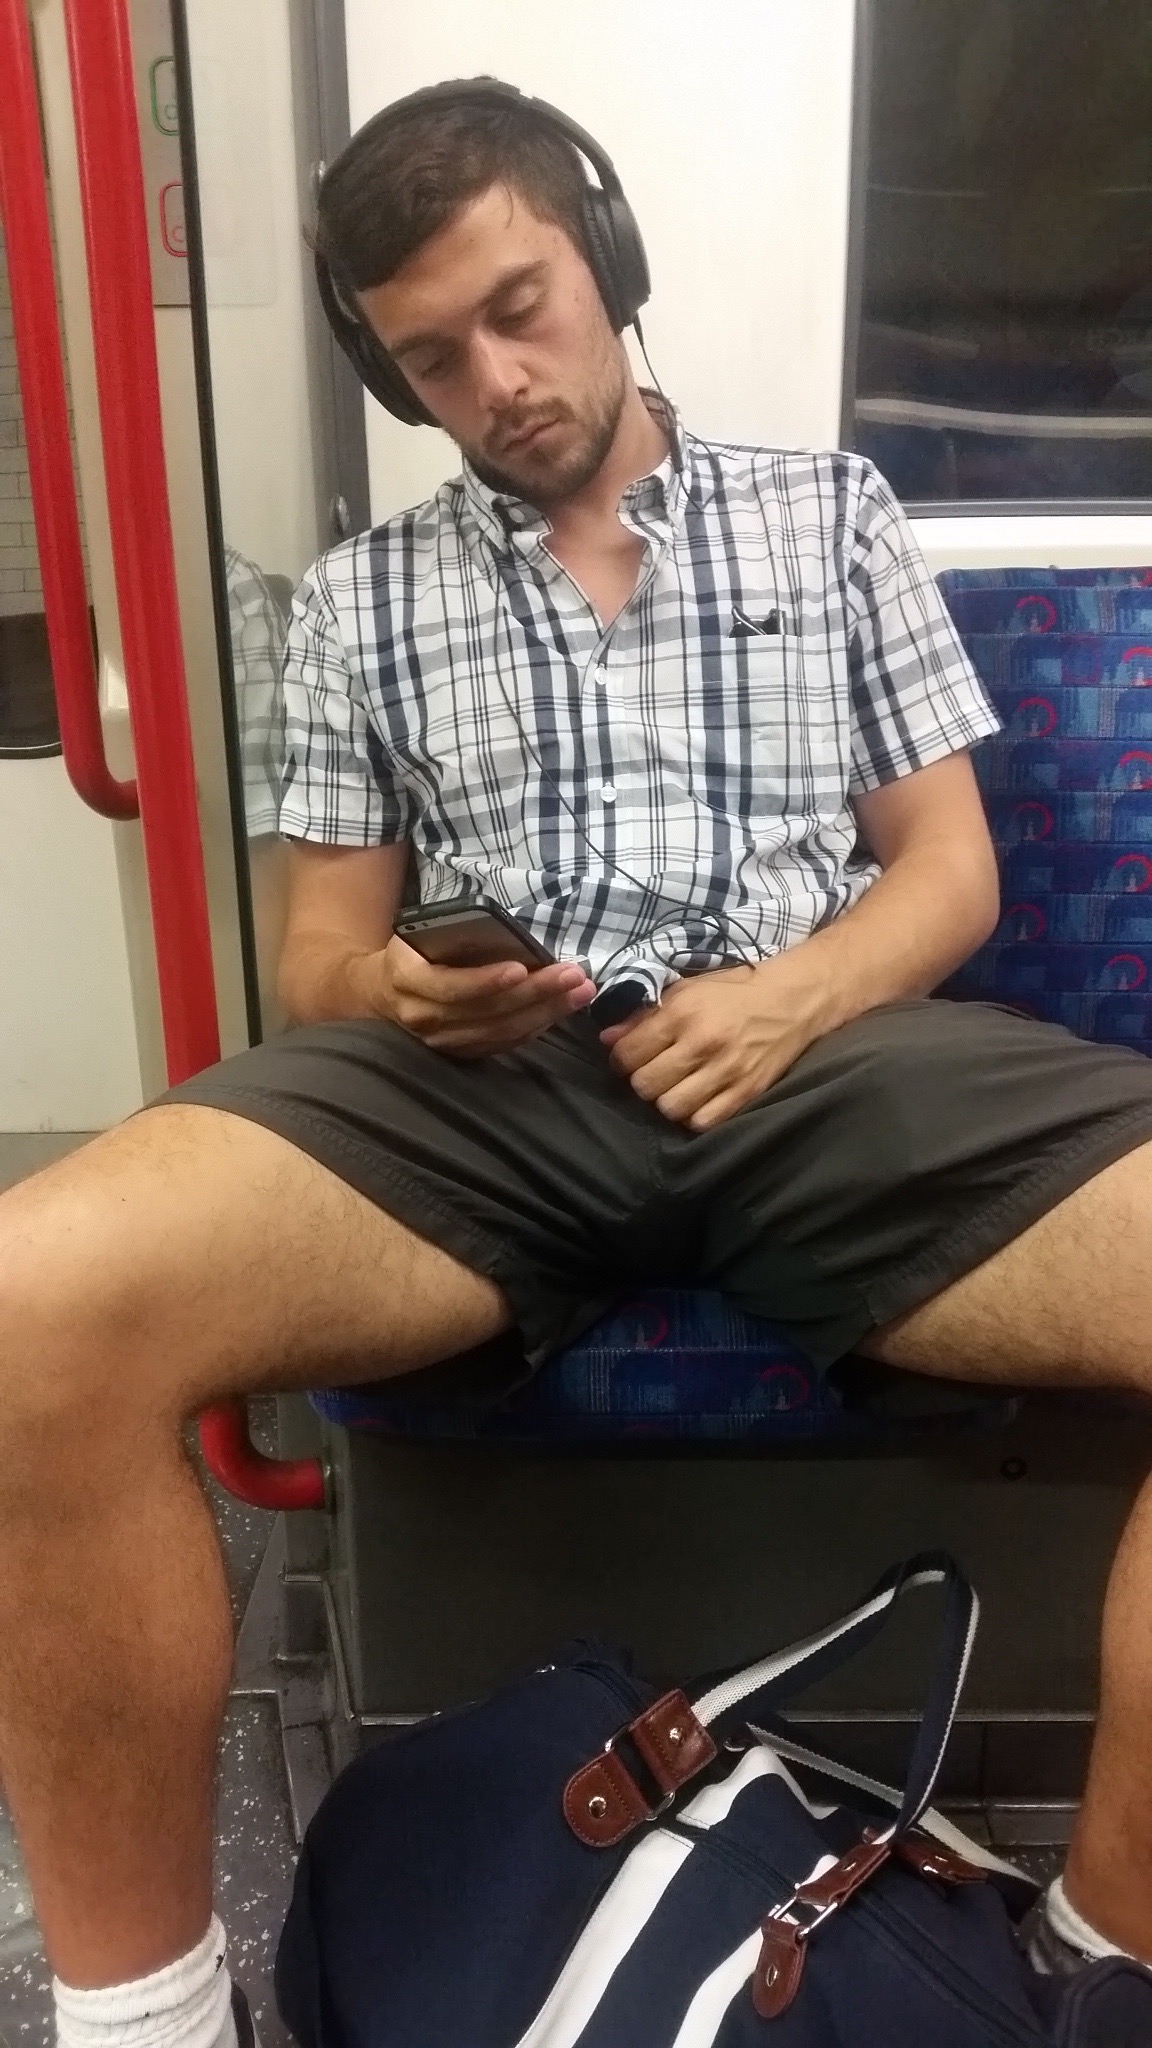 Résultat de recherche d'images pour "man hardon sitting in the subway"